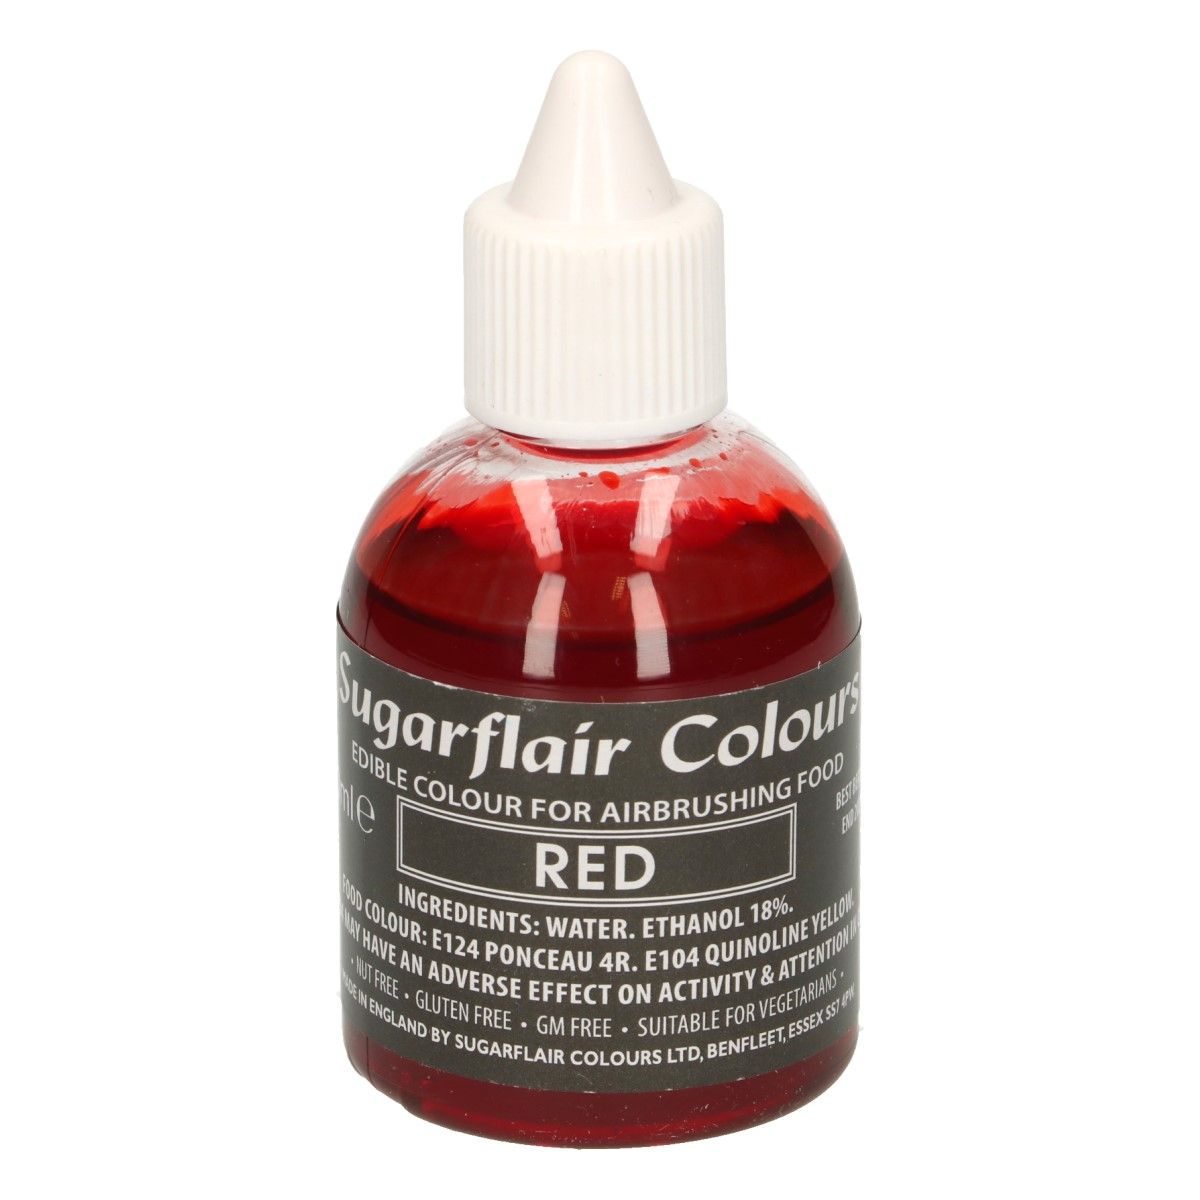 Sugarflair red, červená potravinárska airbrush farba, 60ml